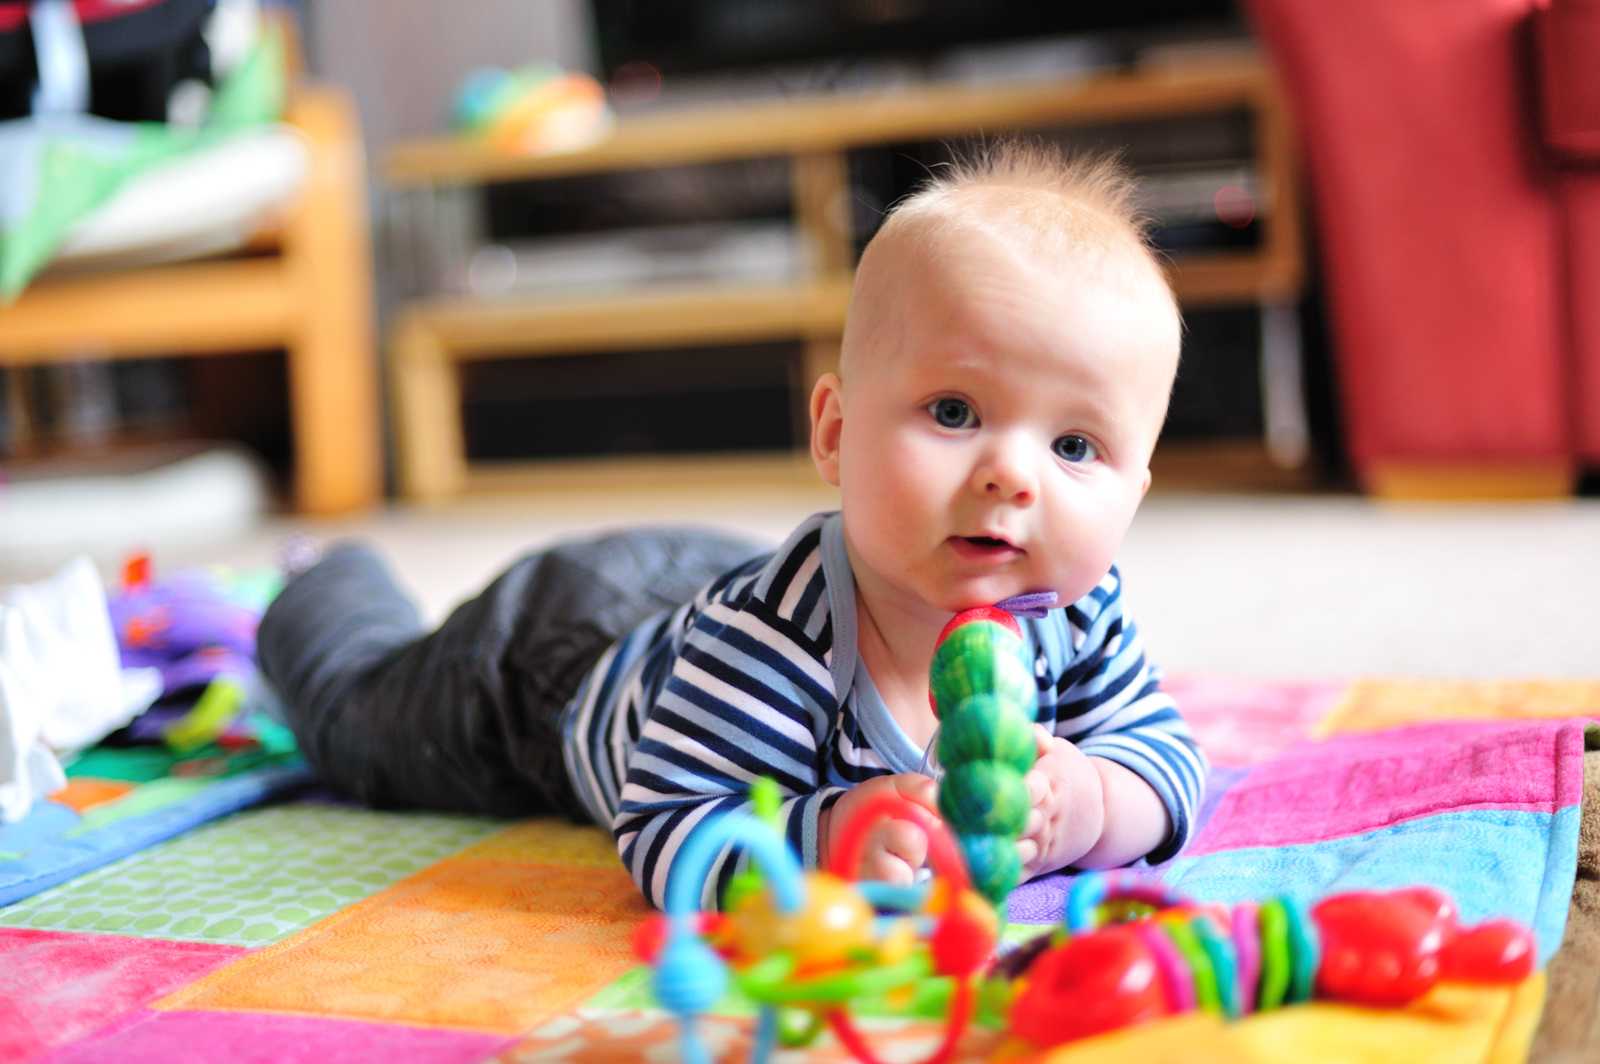 Как развивать ребенка в 3 месяца и чем занять малыша в период бодрствования